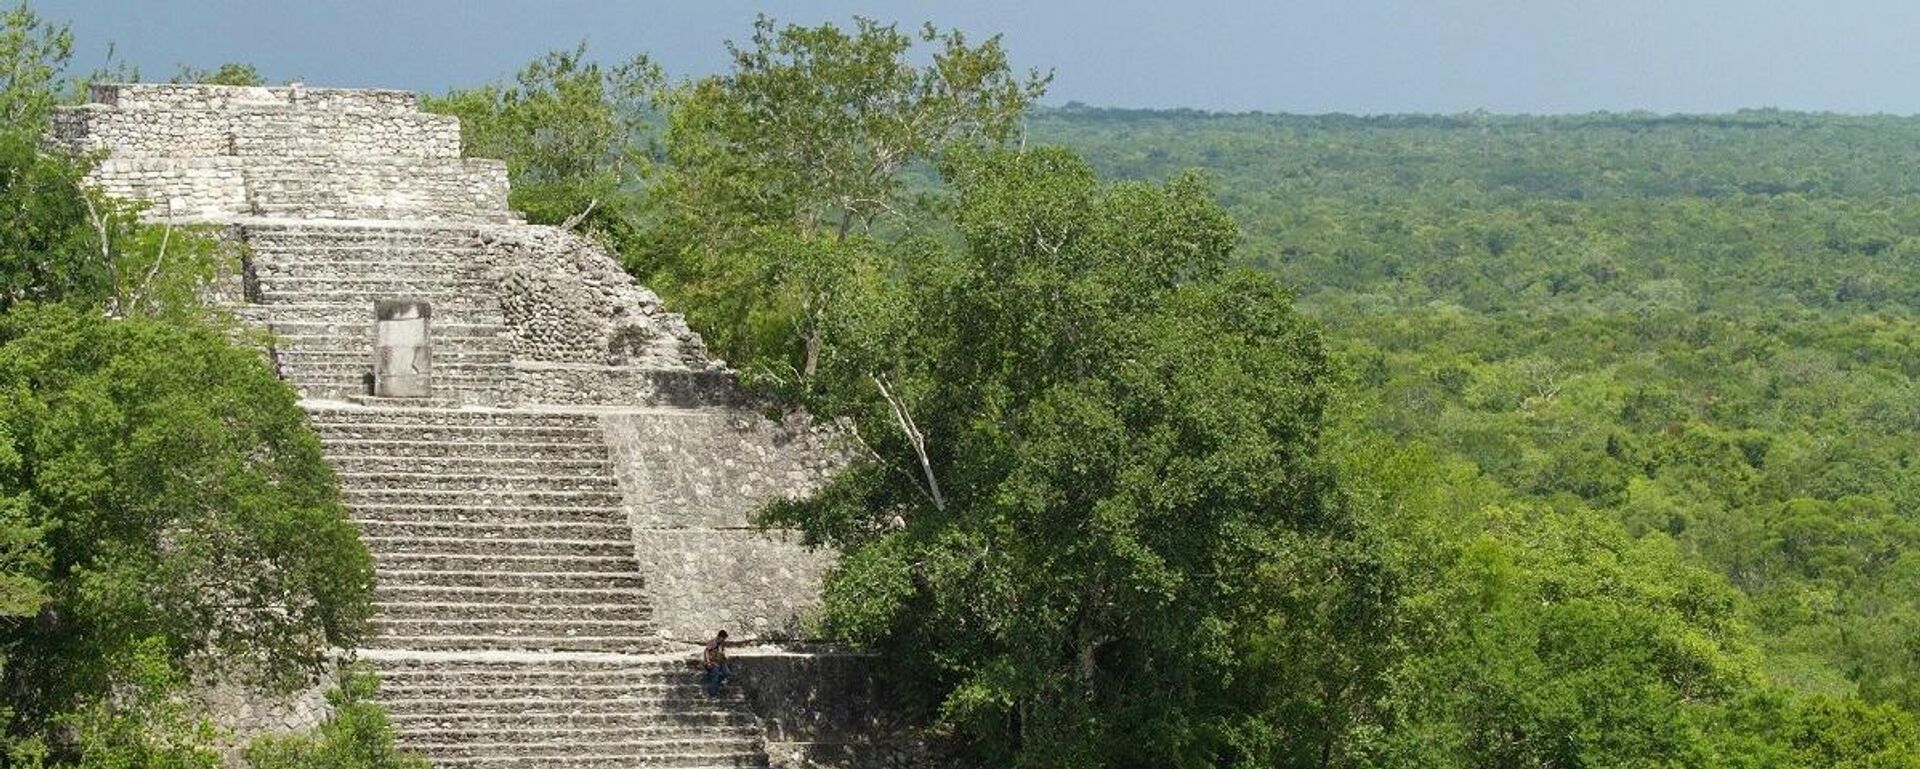 La ciudad maya de Calakmul, ubicada en el actual estado de Campeche, en el sureste mexicano. - Sputnik Mundo, 1920, 29.10.2022